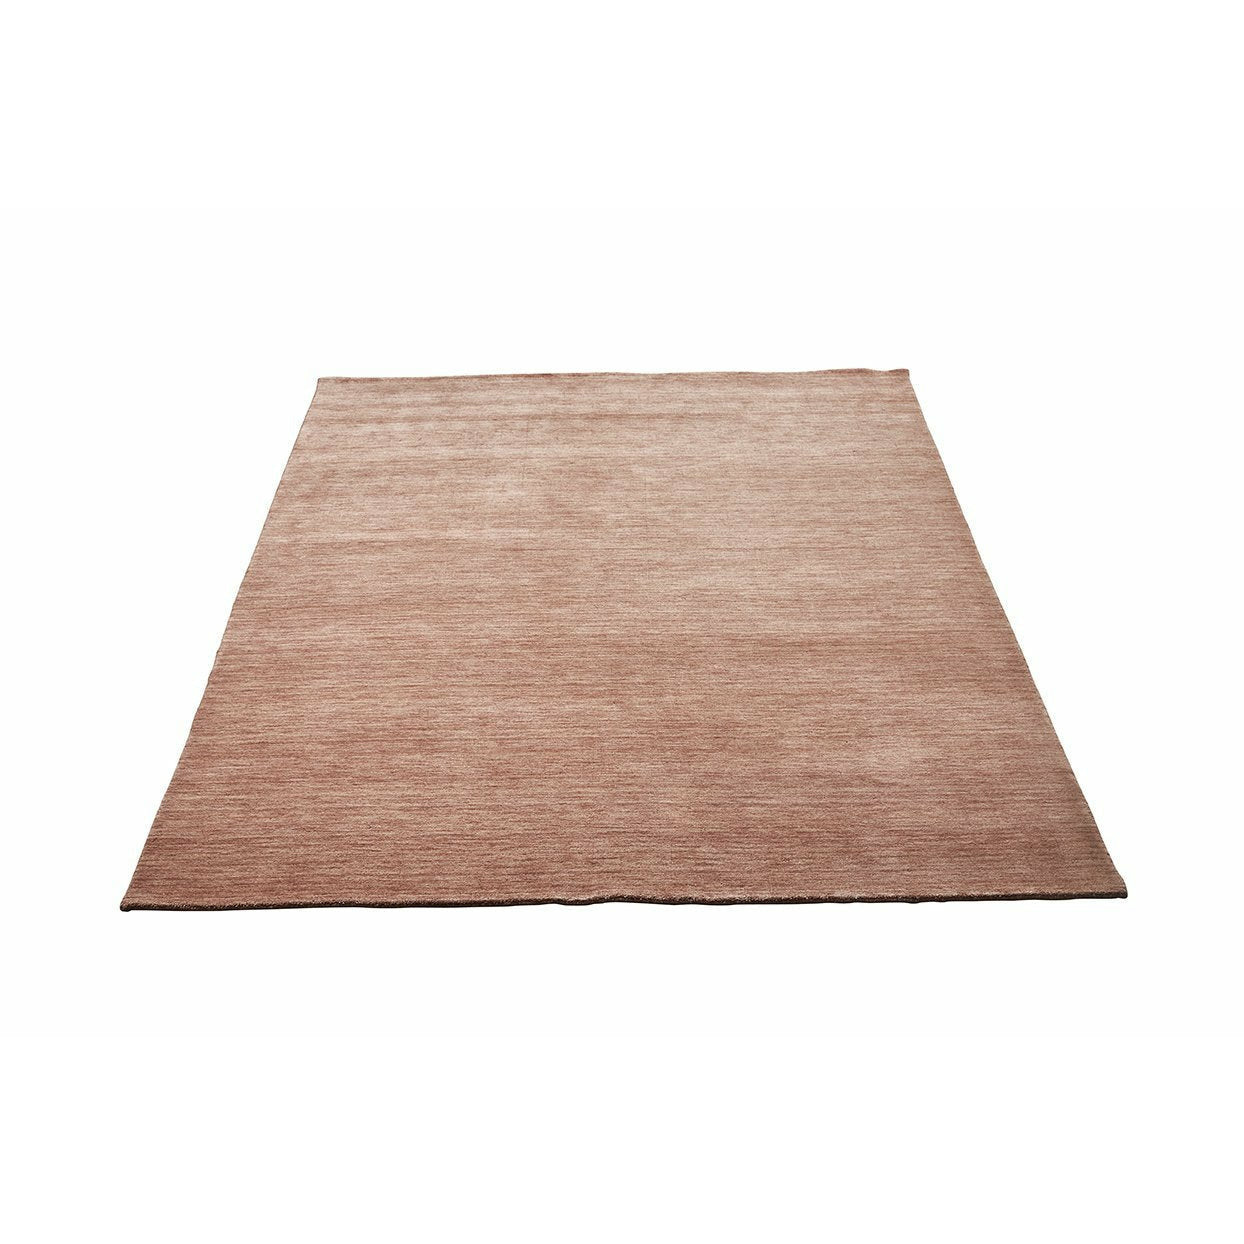 Creme de Cafe Massimo Earth Carpet, 250x300 cm